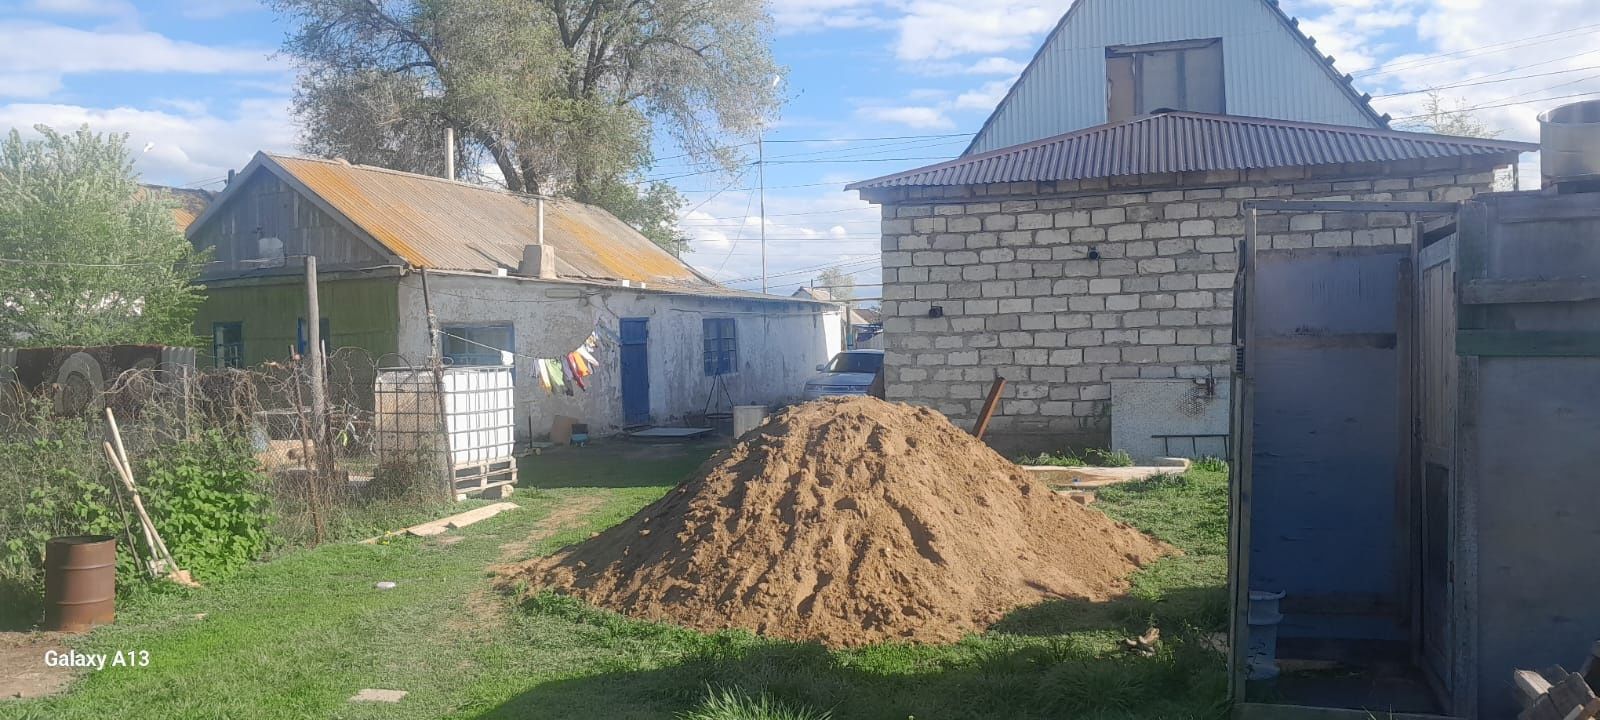 Продается дом и недостройный мансартный на улице Комсомольская